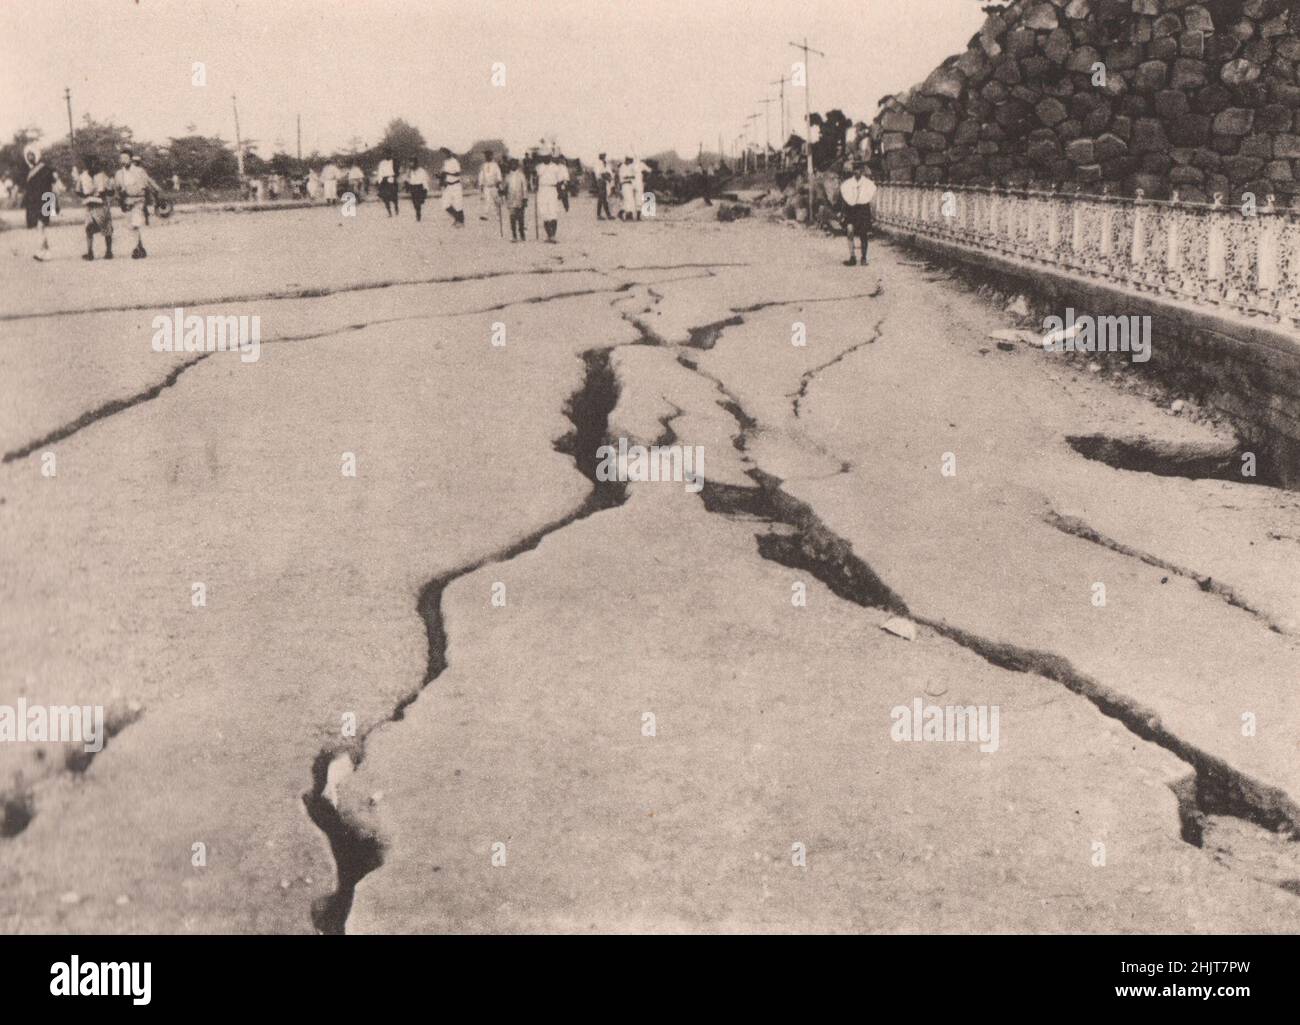 Tremblement de terre au Japon en 1923 : fissures sur la route 'gaisen' en face du palais impérial. (Côté gauche) Banque D'Images